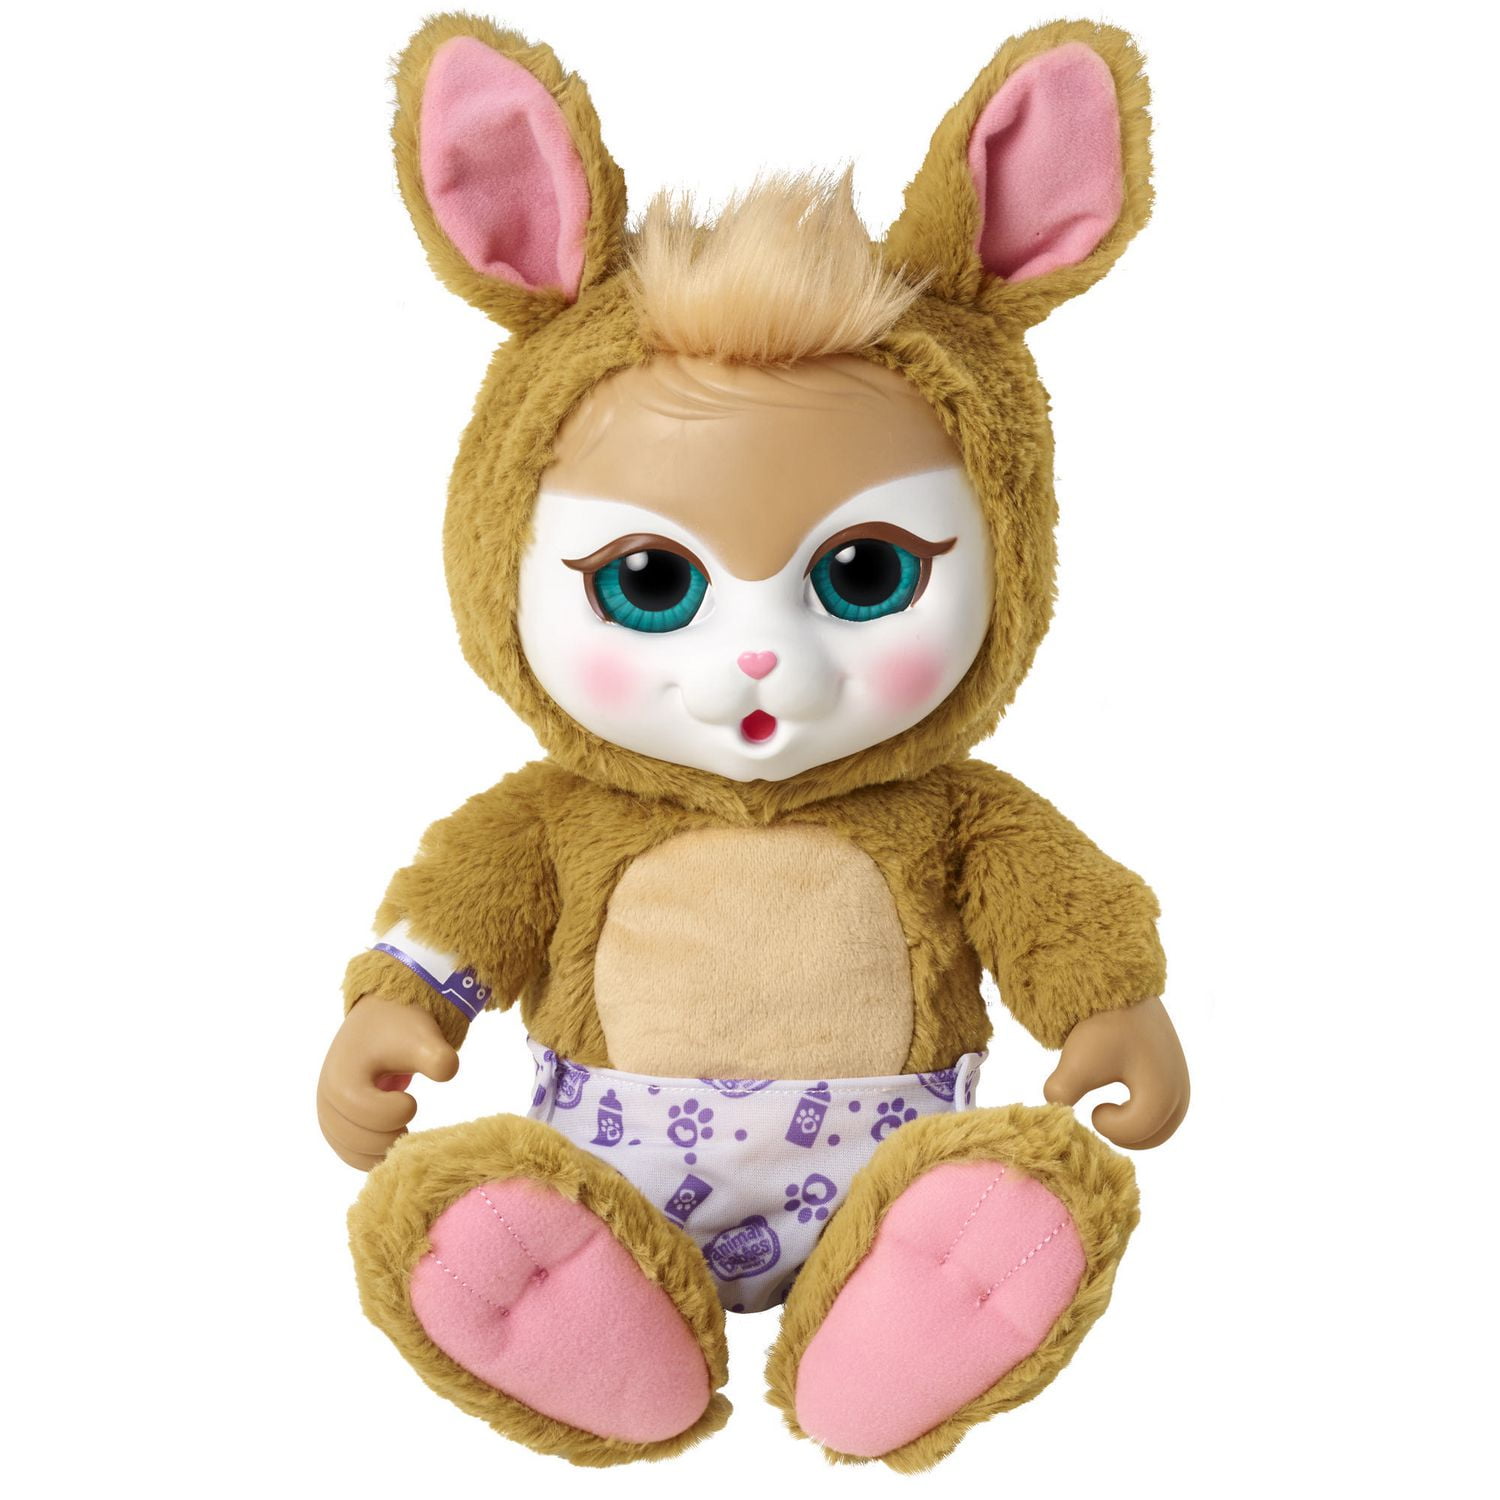 Animal Babies Nursery Deluxe Electronic Plush Toy - Baby Kangaroo 